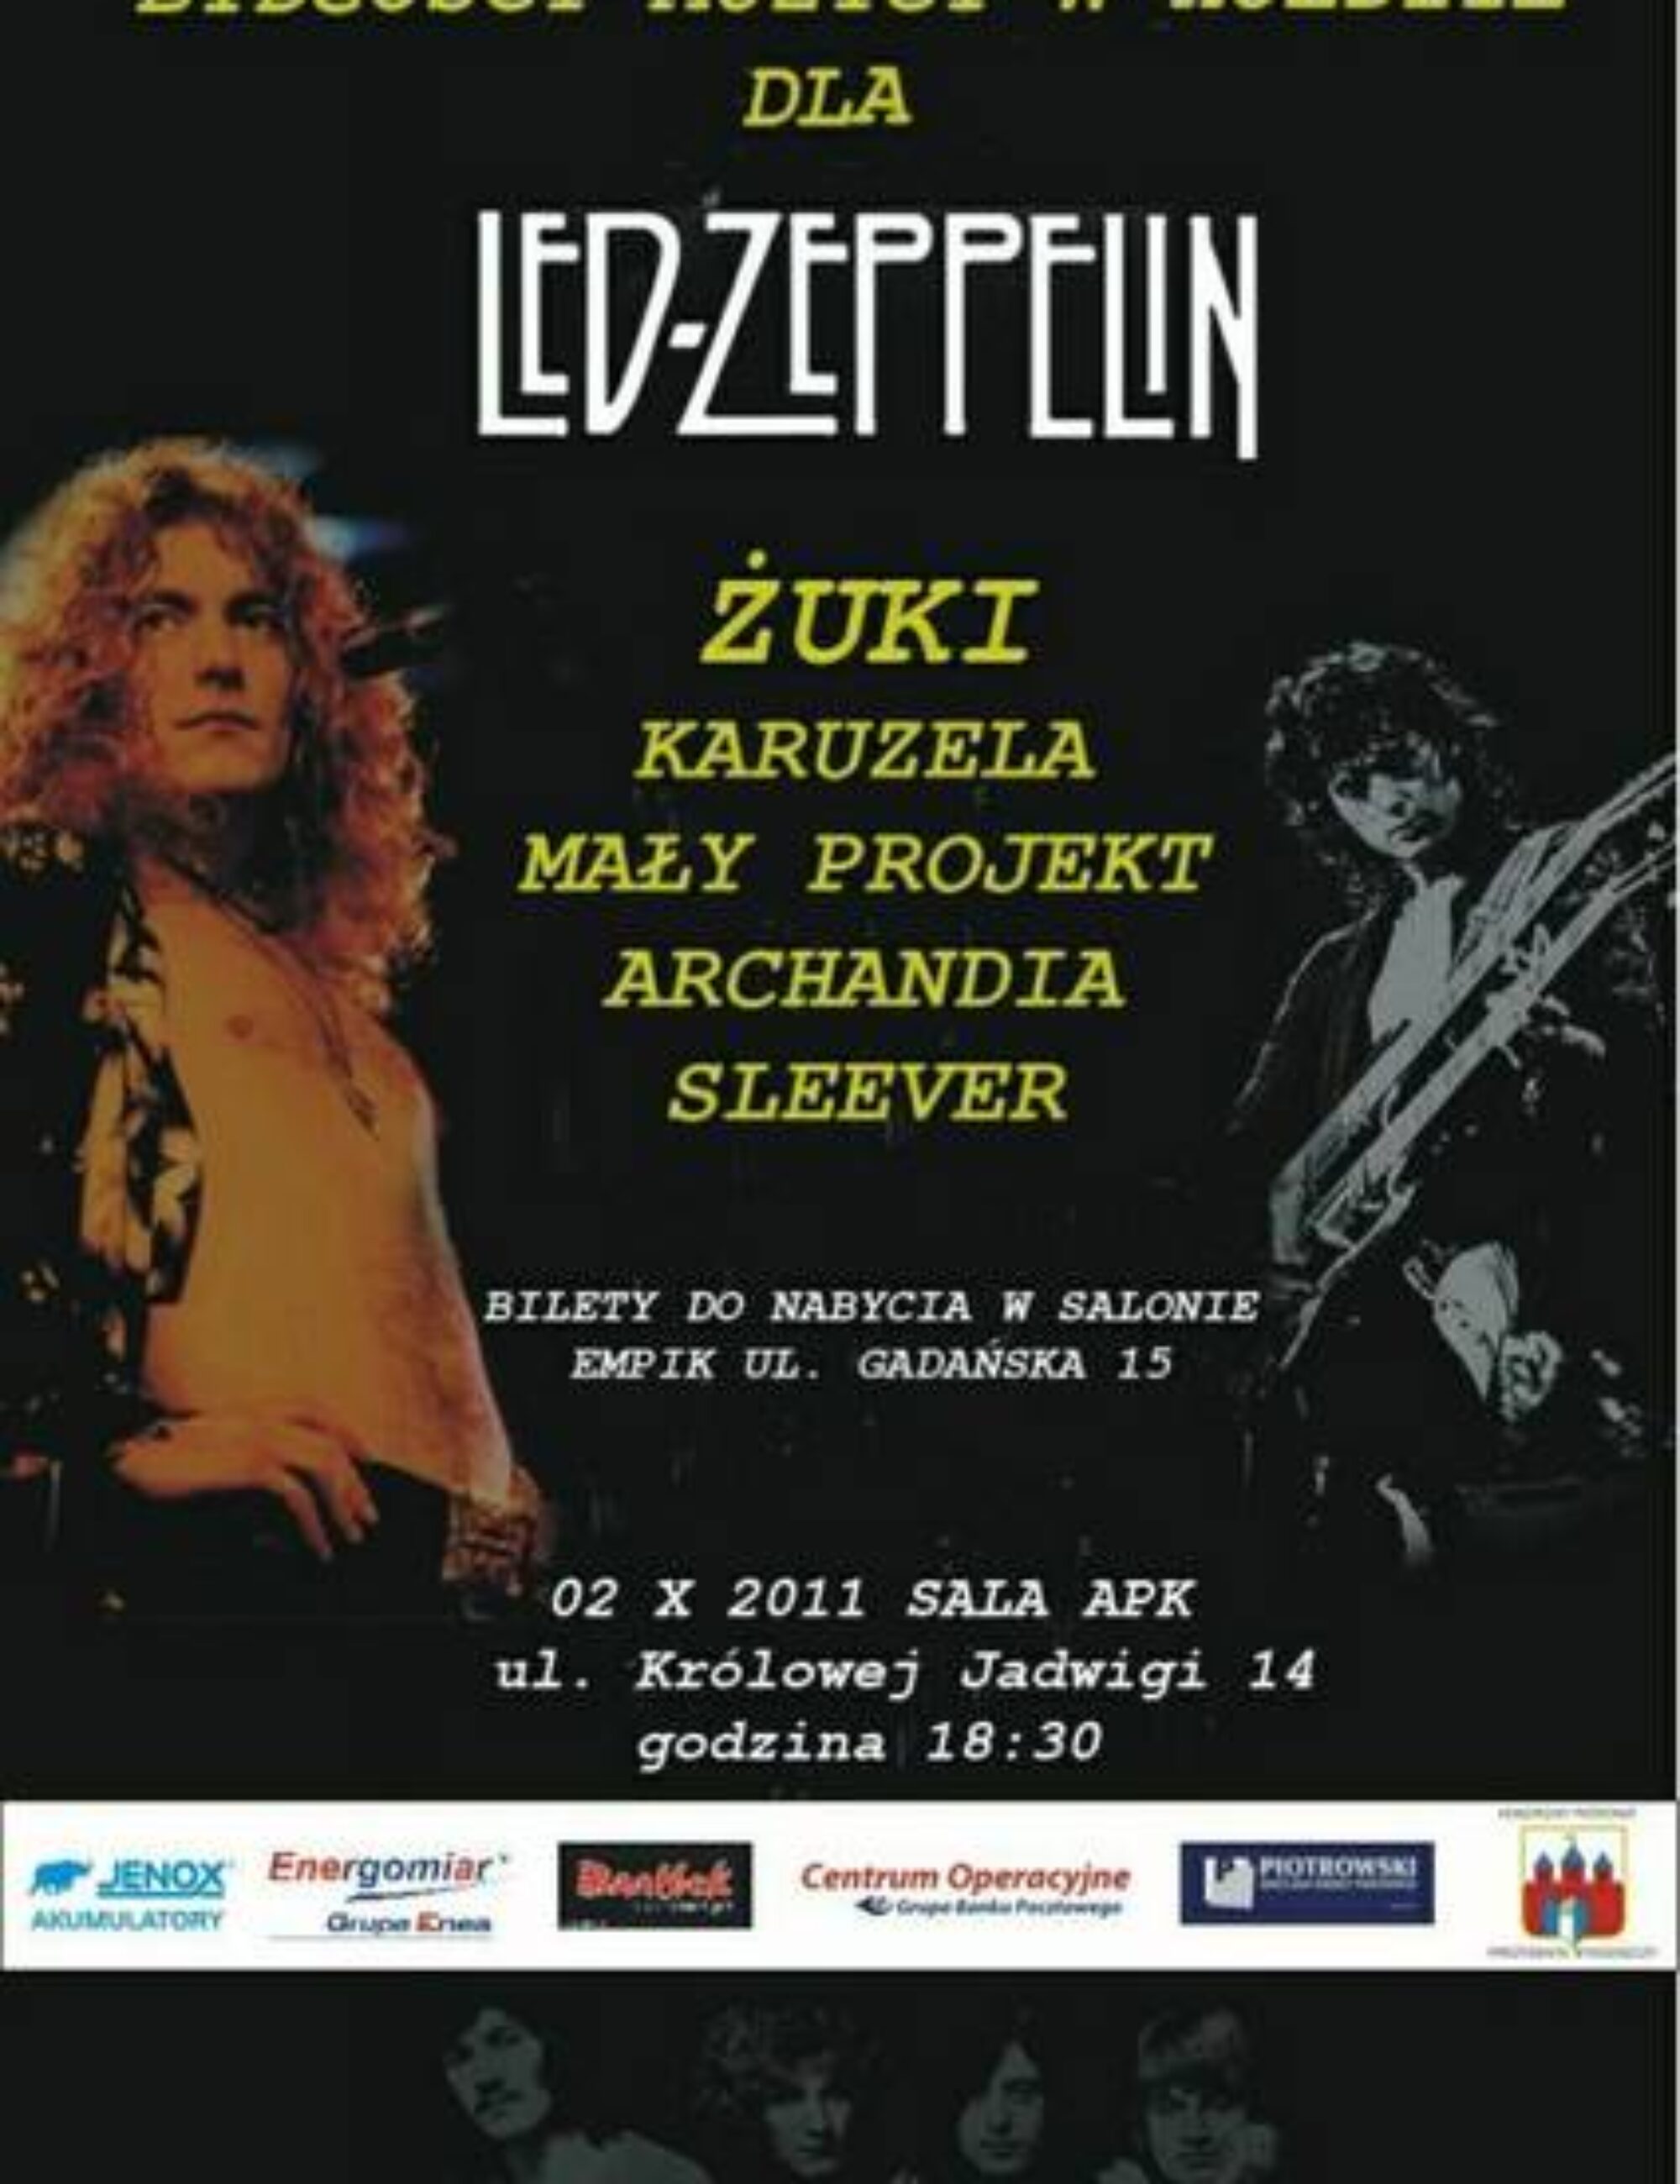 „Bydgoscy Muzycy w hołdzie dla Led Zeppelin”